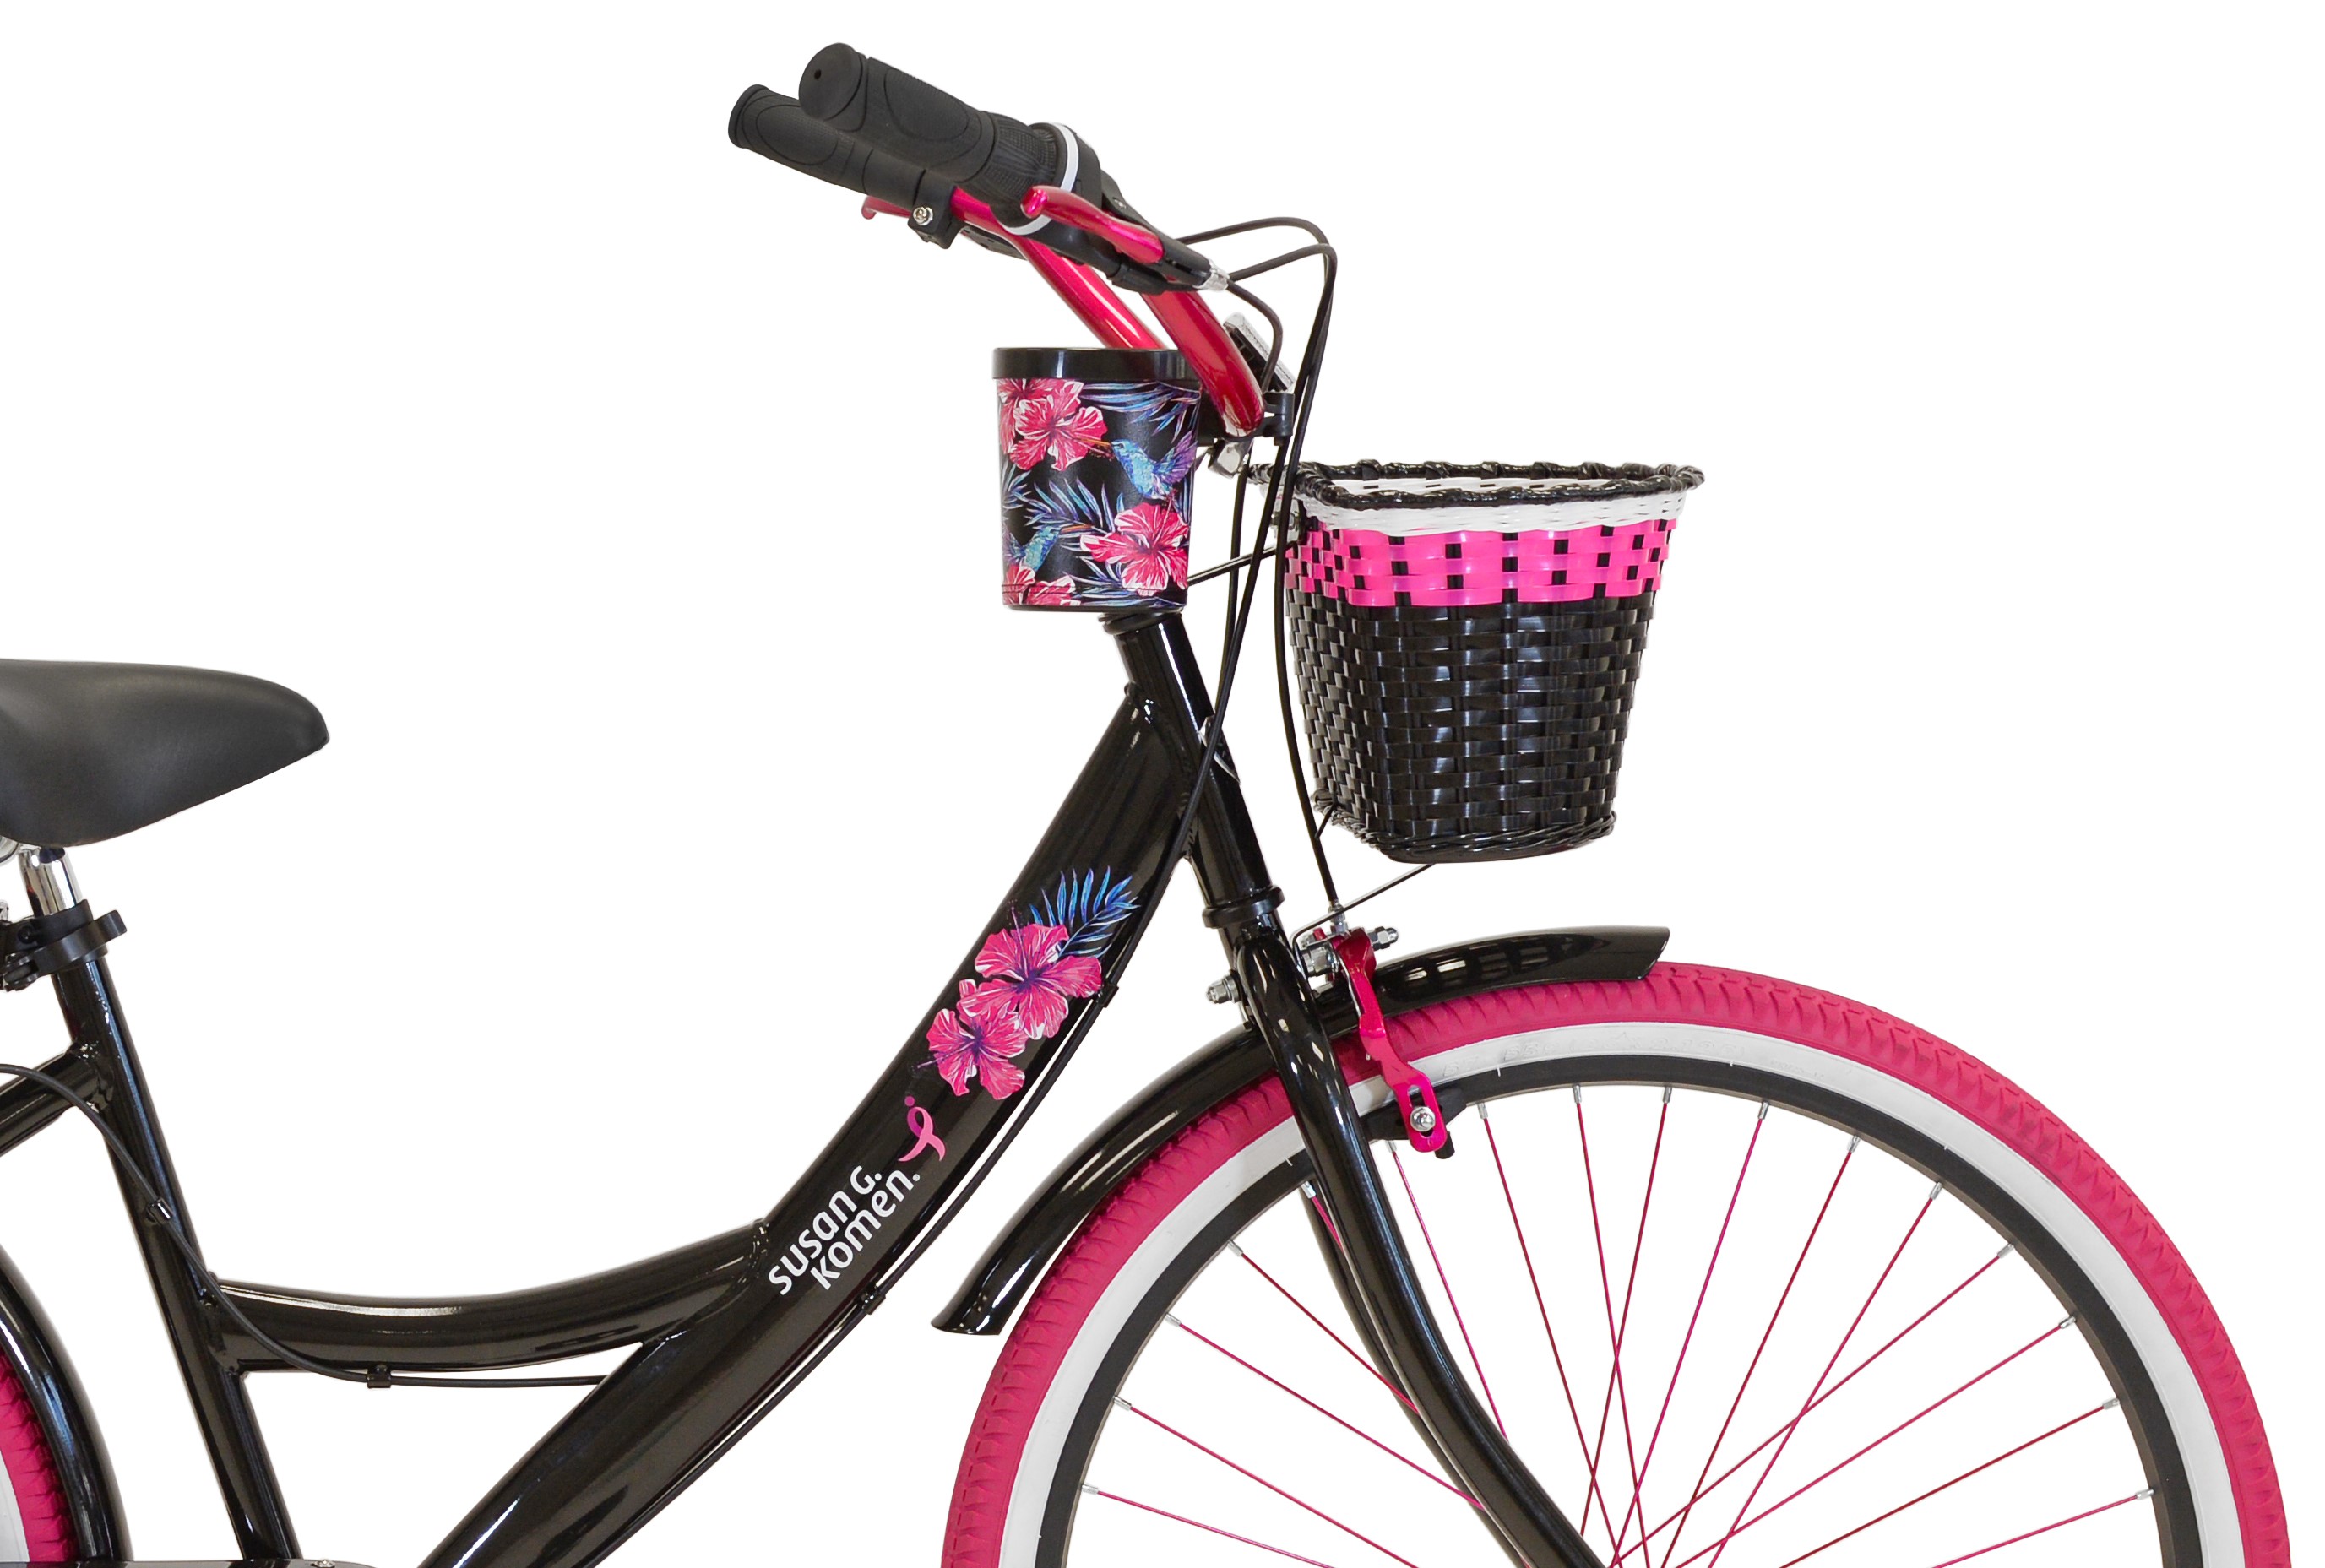 Susan G Komen 26" Women's Cruiser Bike, Black/Pink - image 6 of 10